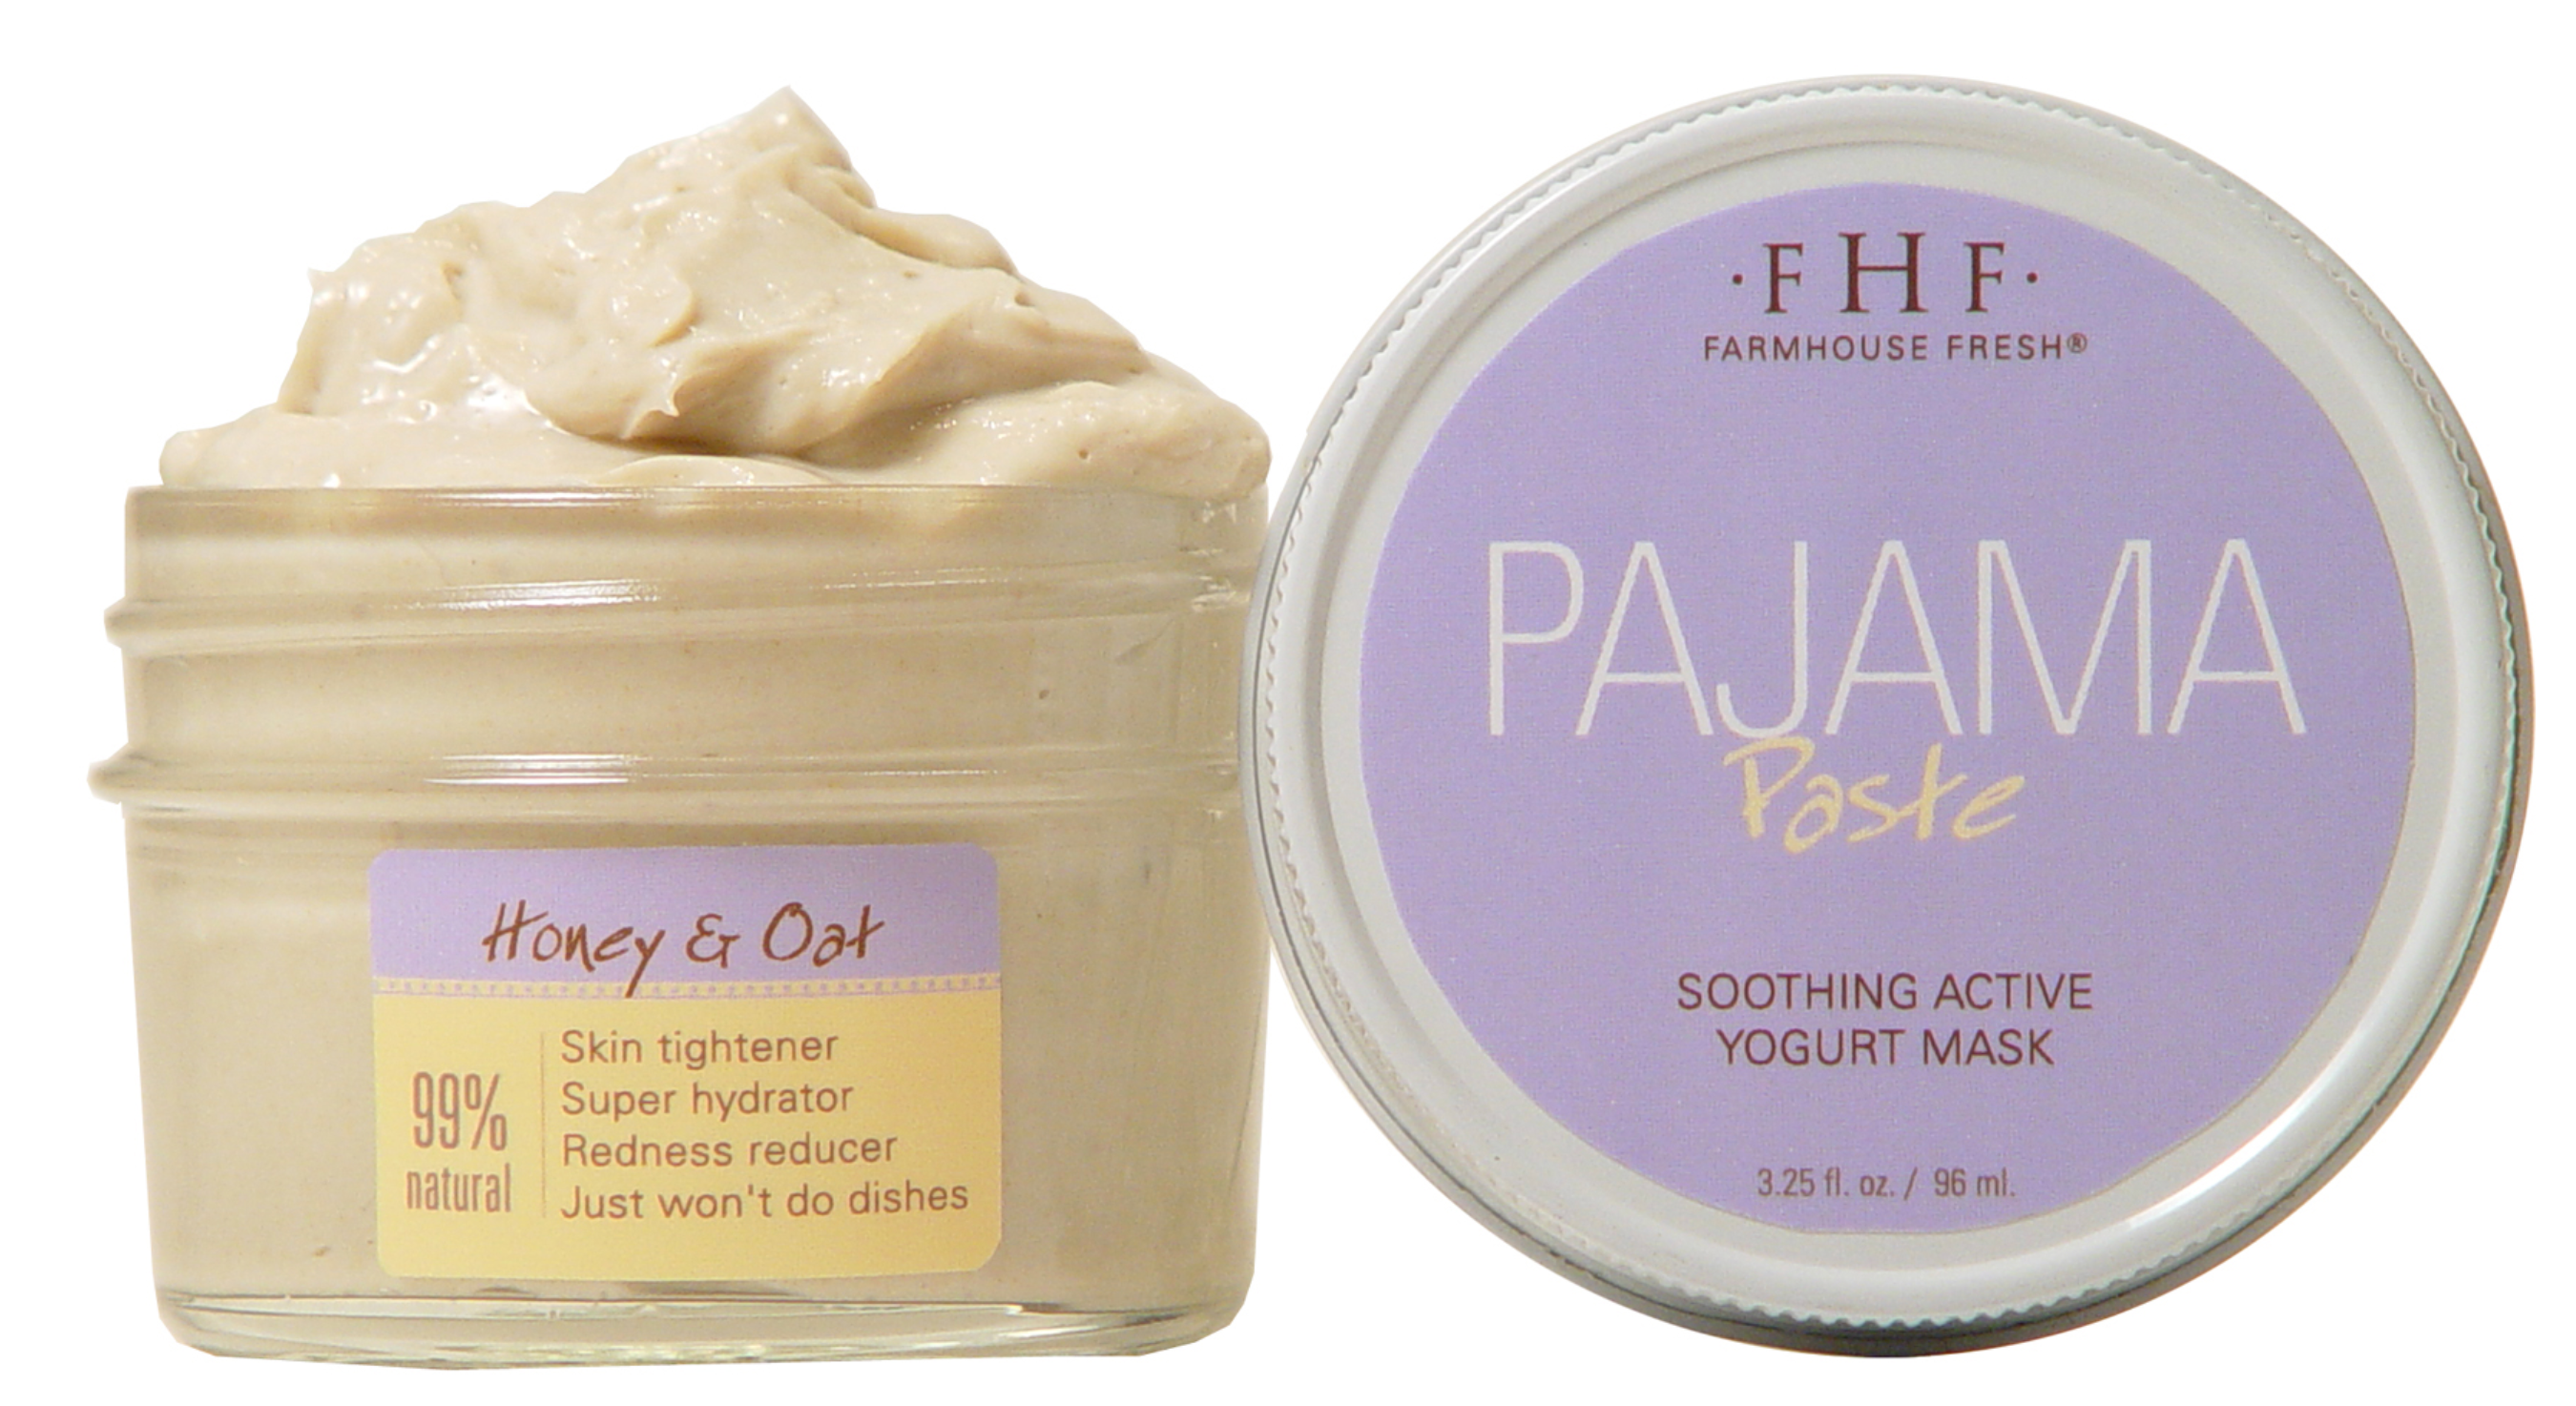 FarmHouse Fresh Pajama Paste® Soothing Active Yogurt Mask